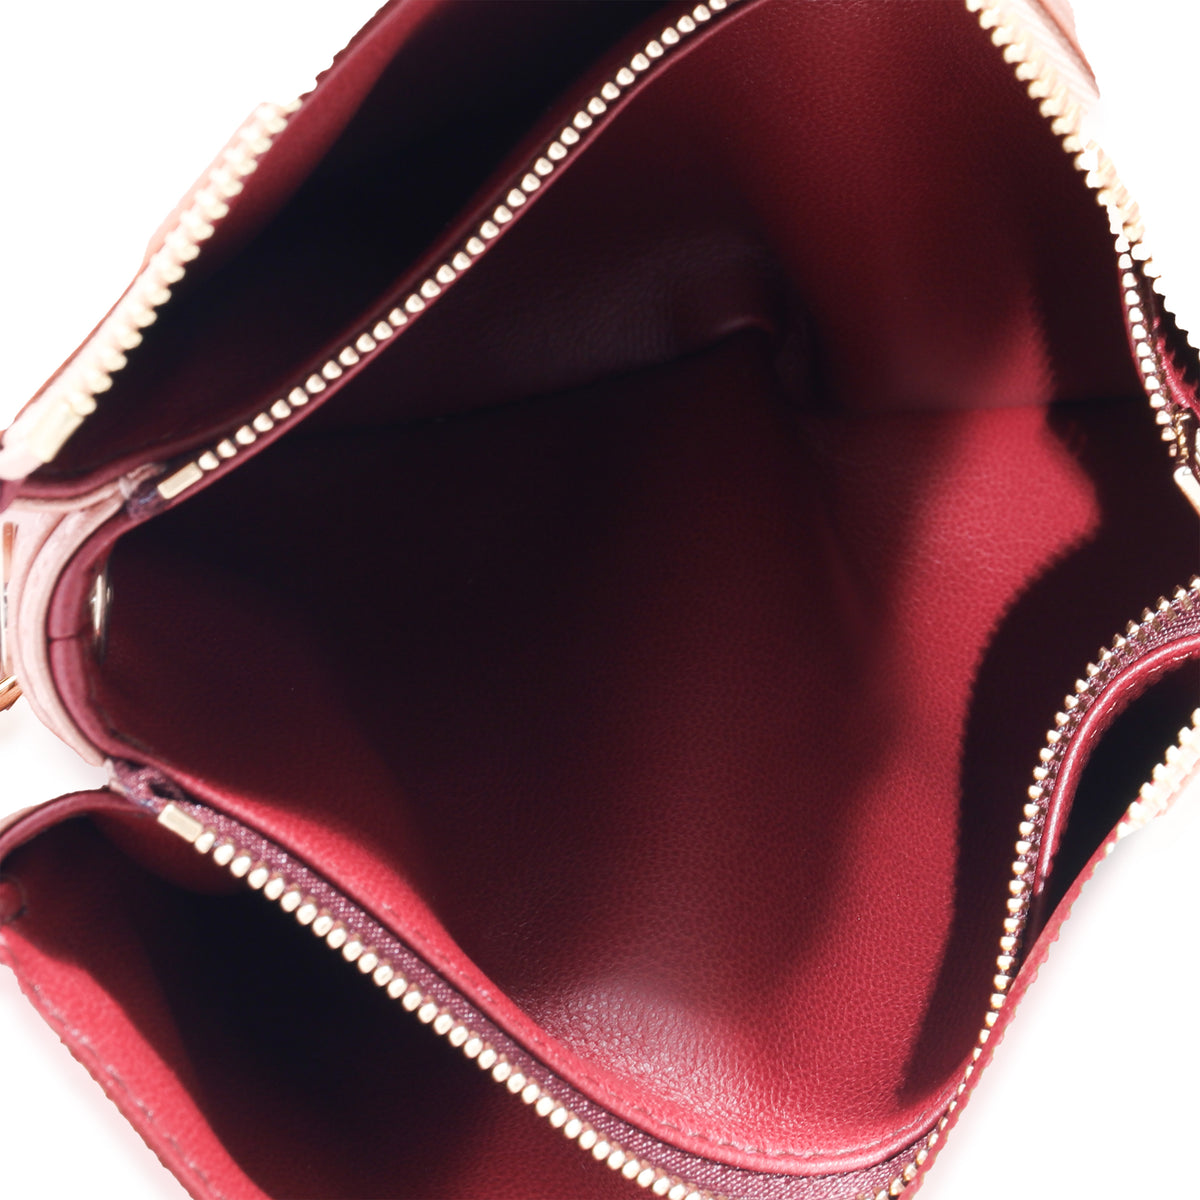 Coussin BB H27 - Women - Handbags